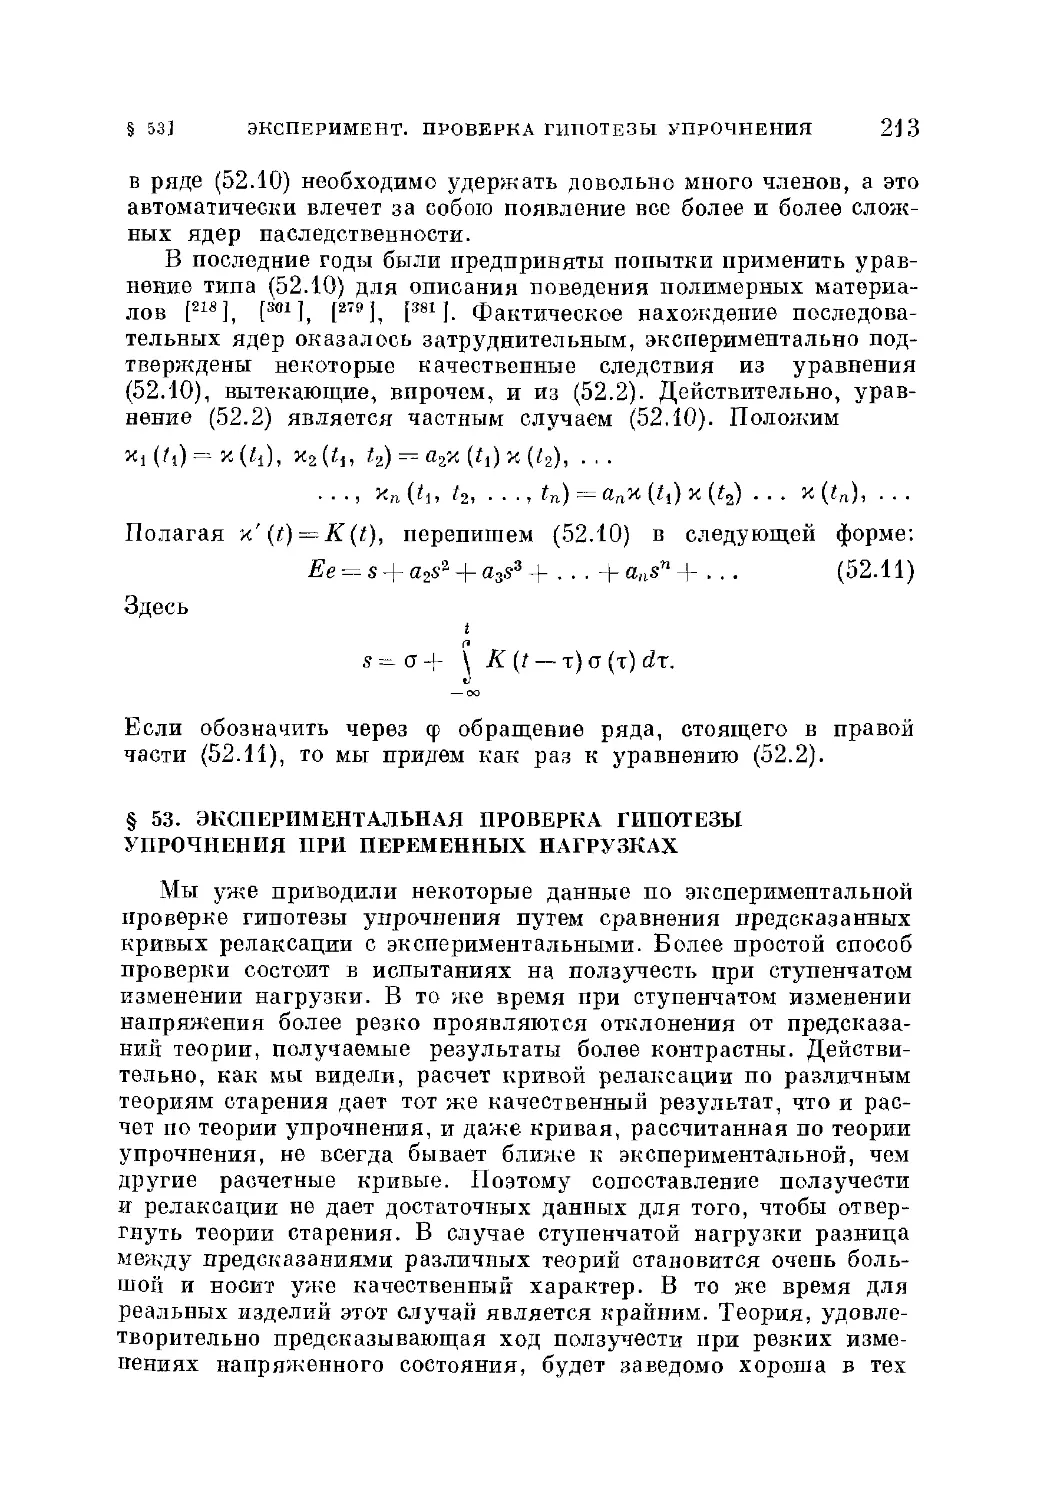 § 53. Экспериментальная проверка гипотезы упрочнения при переменных нагрузках